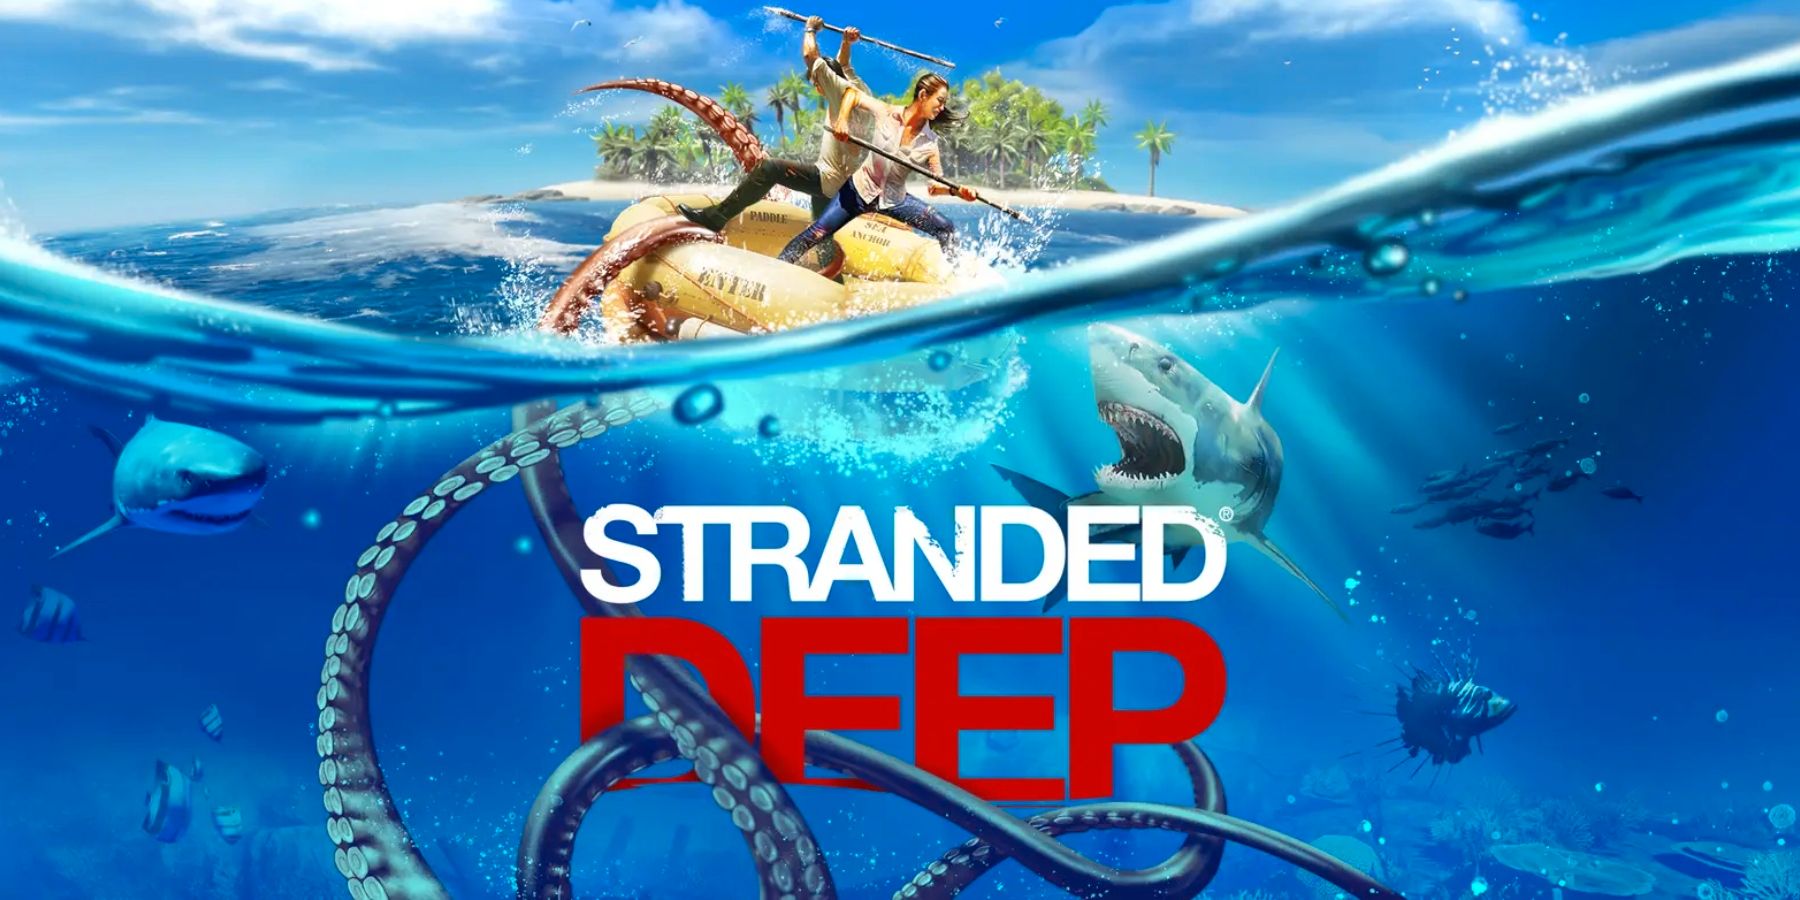 Stranded Deep מקבל שיתוף פעולה מקוון באמצעות עדכון חינם שמגיע מחר